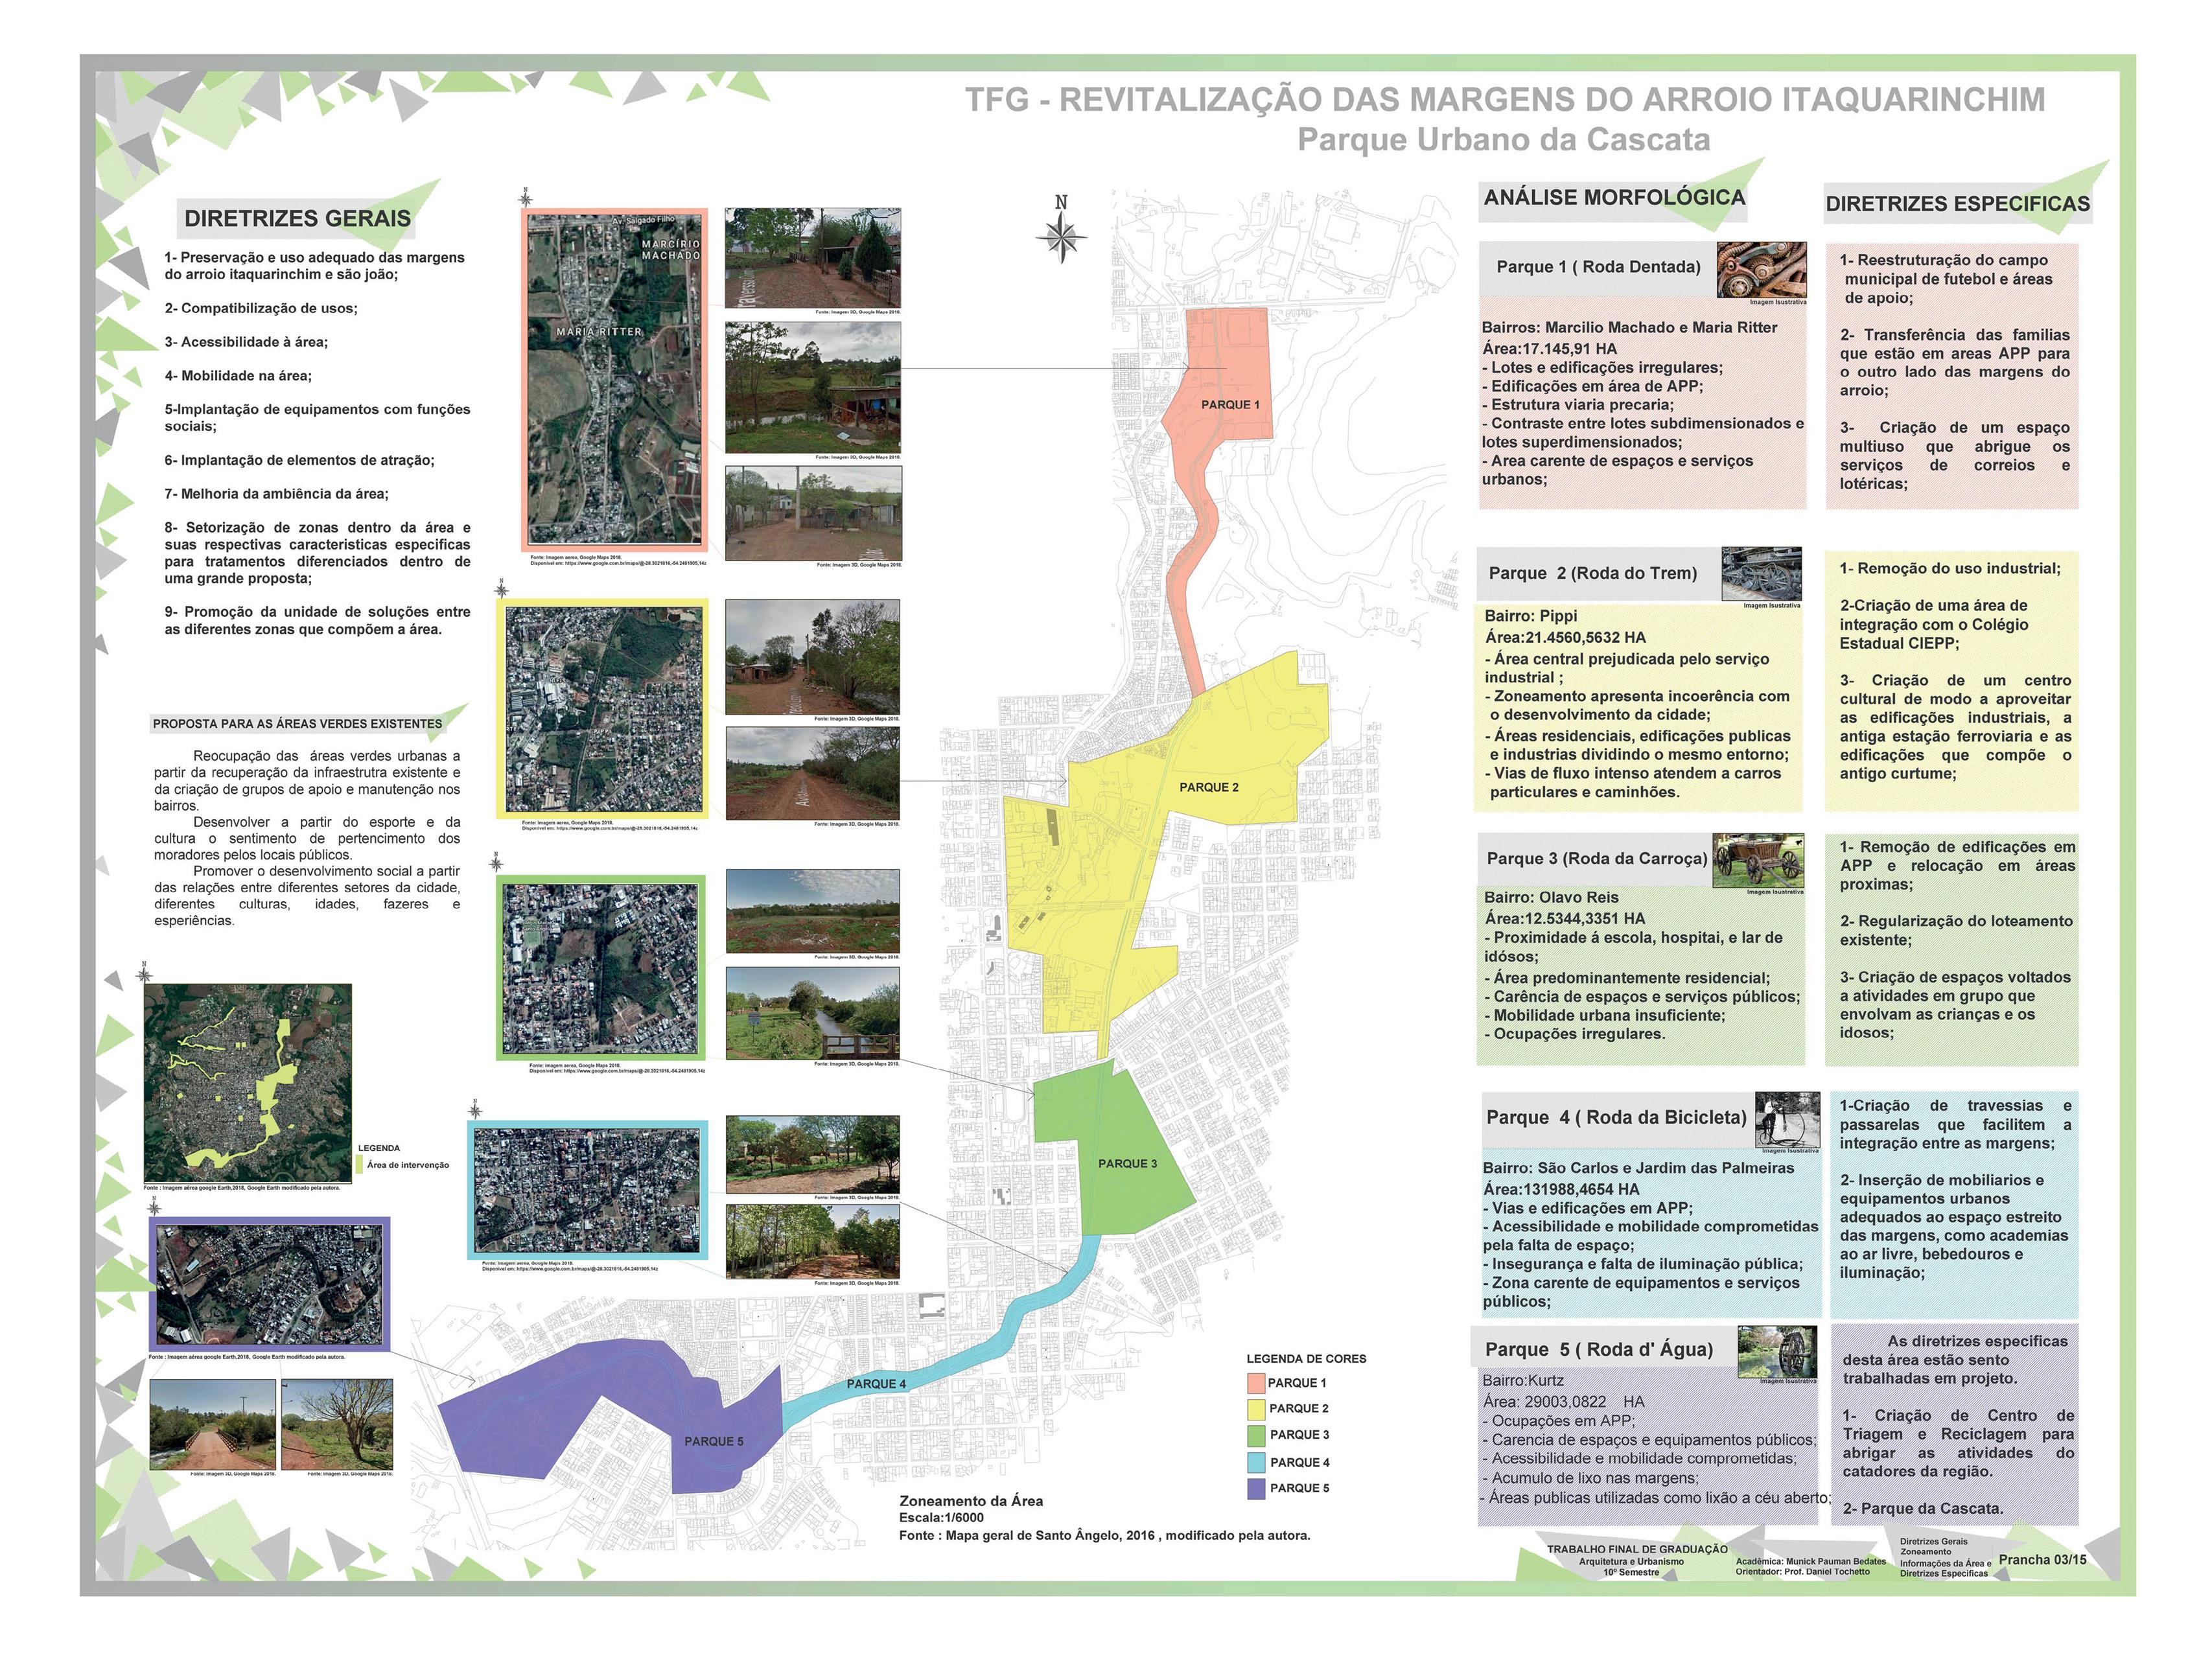 Revitalização das Margens do Arroio Itaquarinchim - Parque Urbano da Cascata3 (Copy)